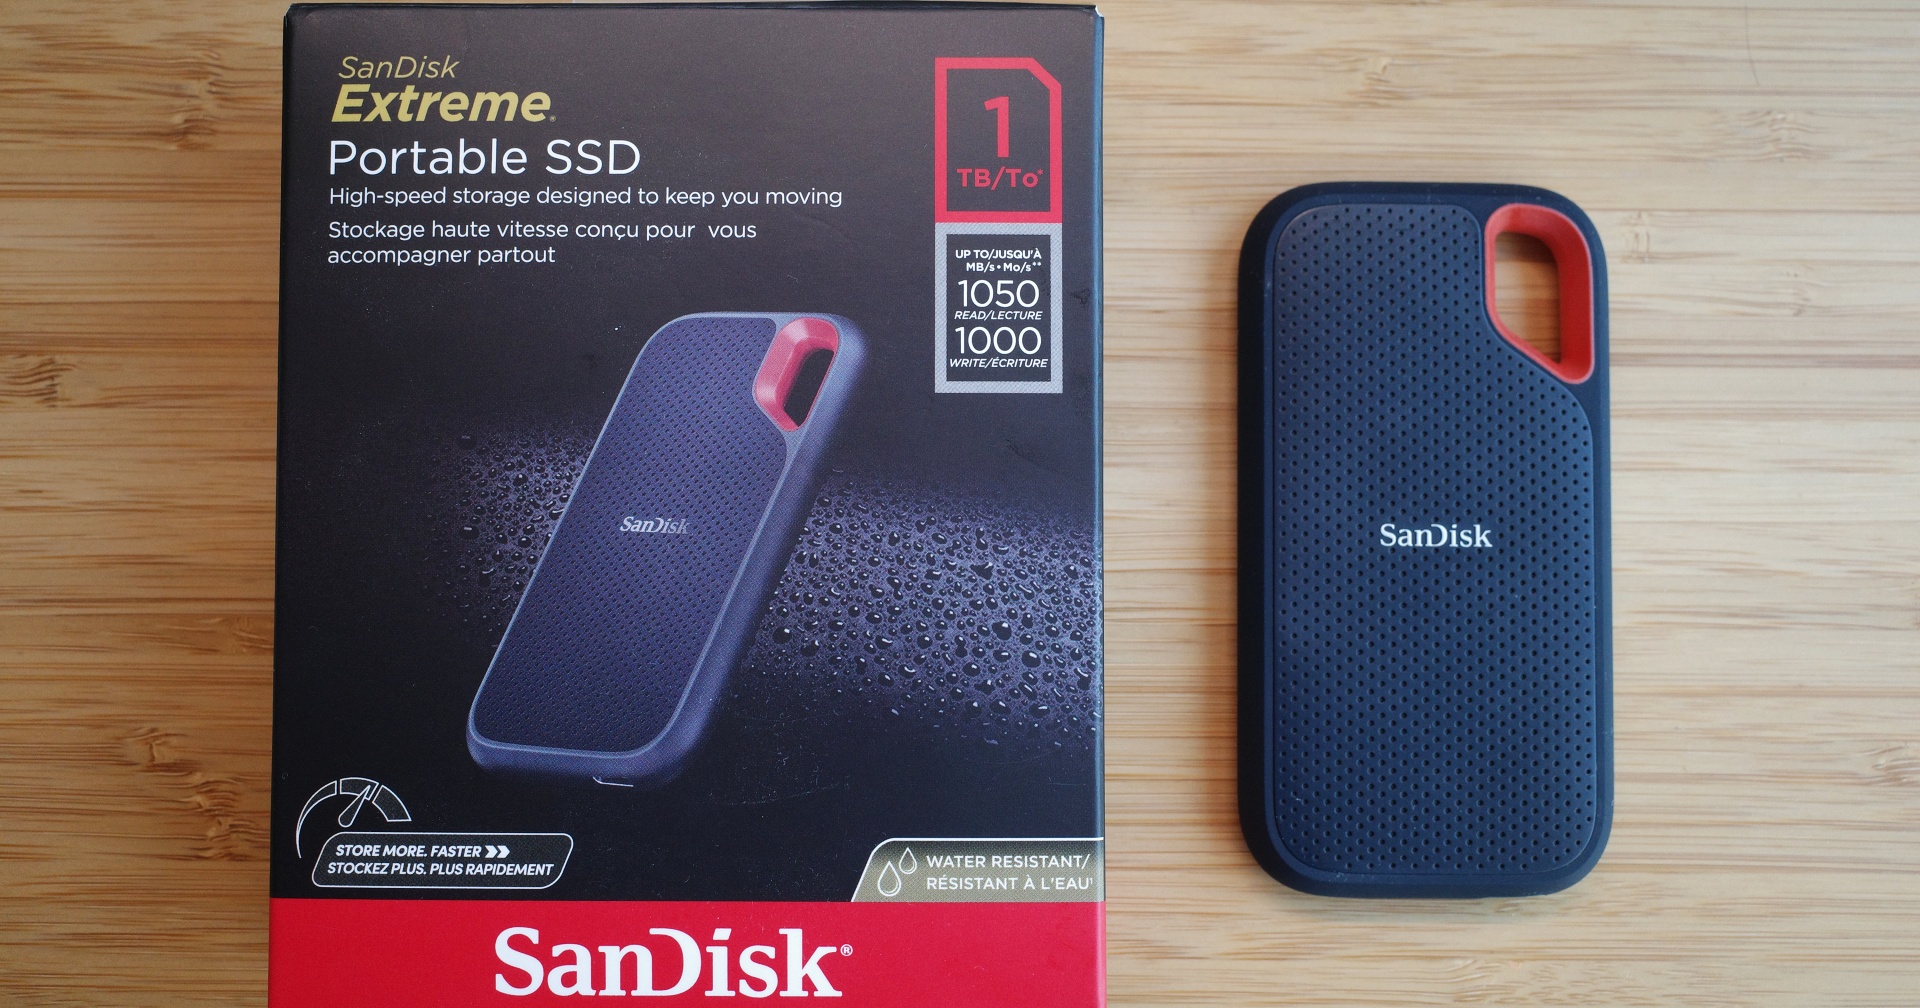 รีวิว Sandisk Extreme Portable SSD v2 ไดรฟ์ภายนอกตัวแรง อ่านเขียน 1 TB/s